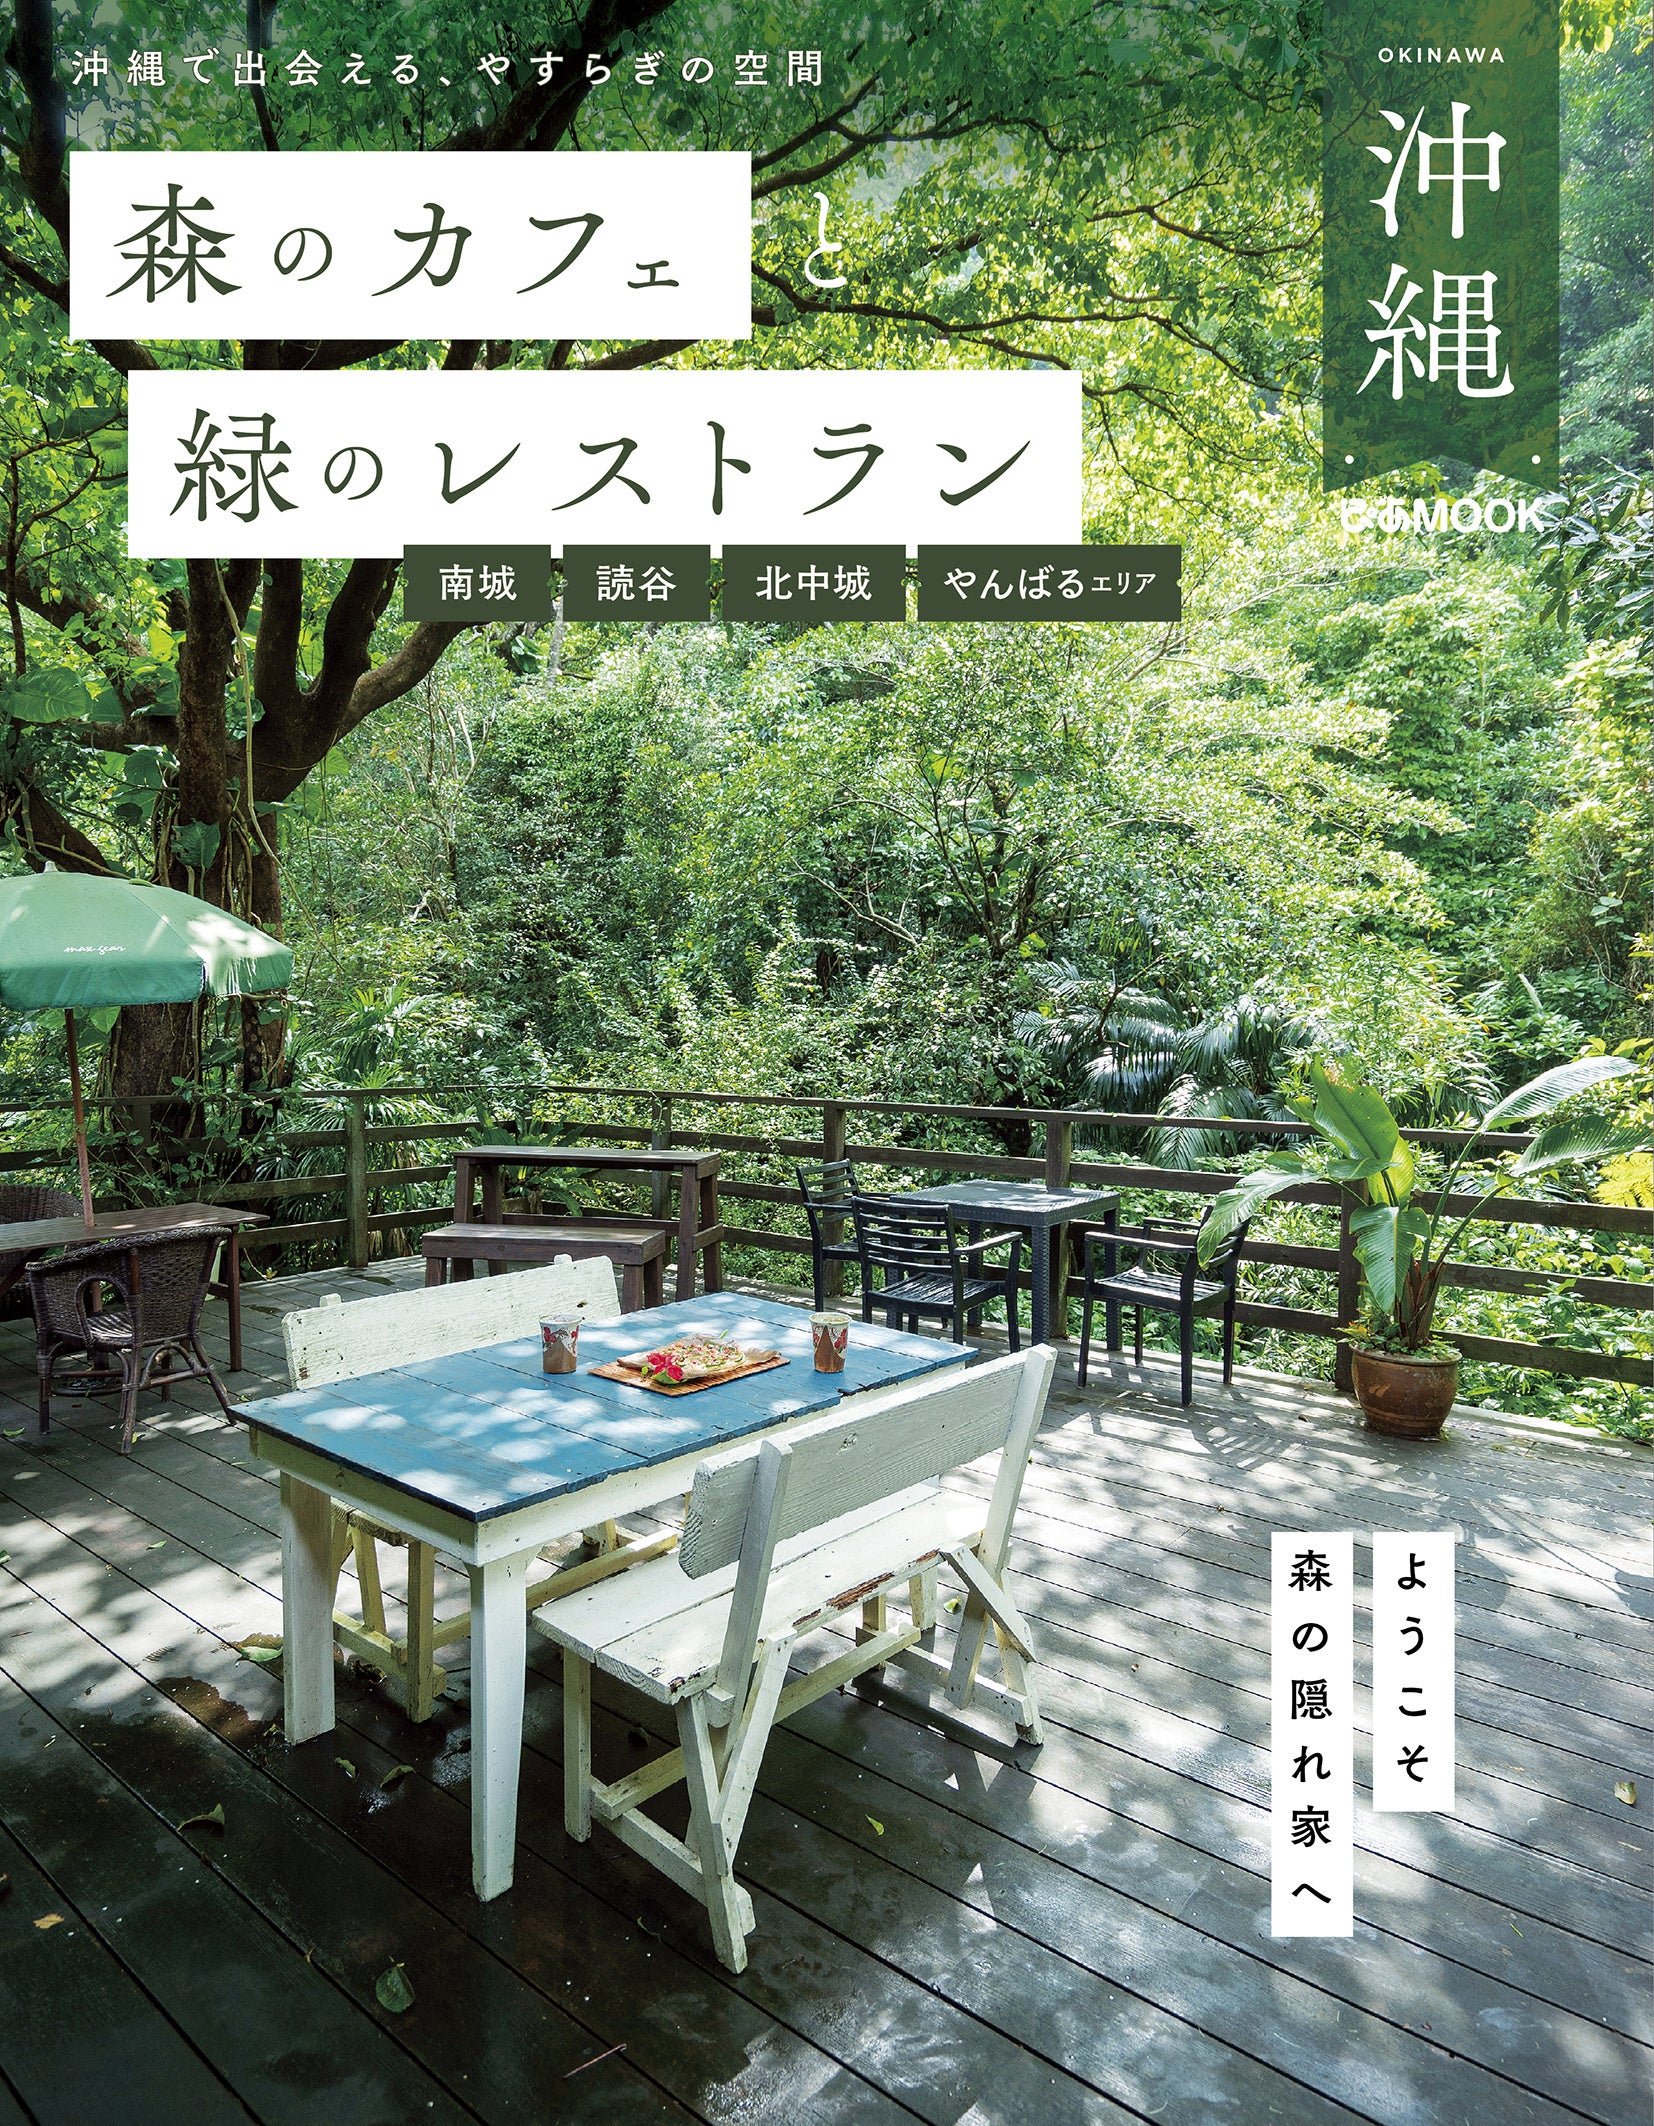 『森のカフェと緑のレストラン 沖縄』